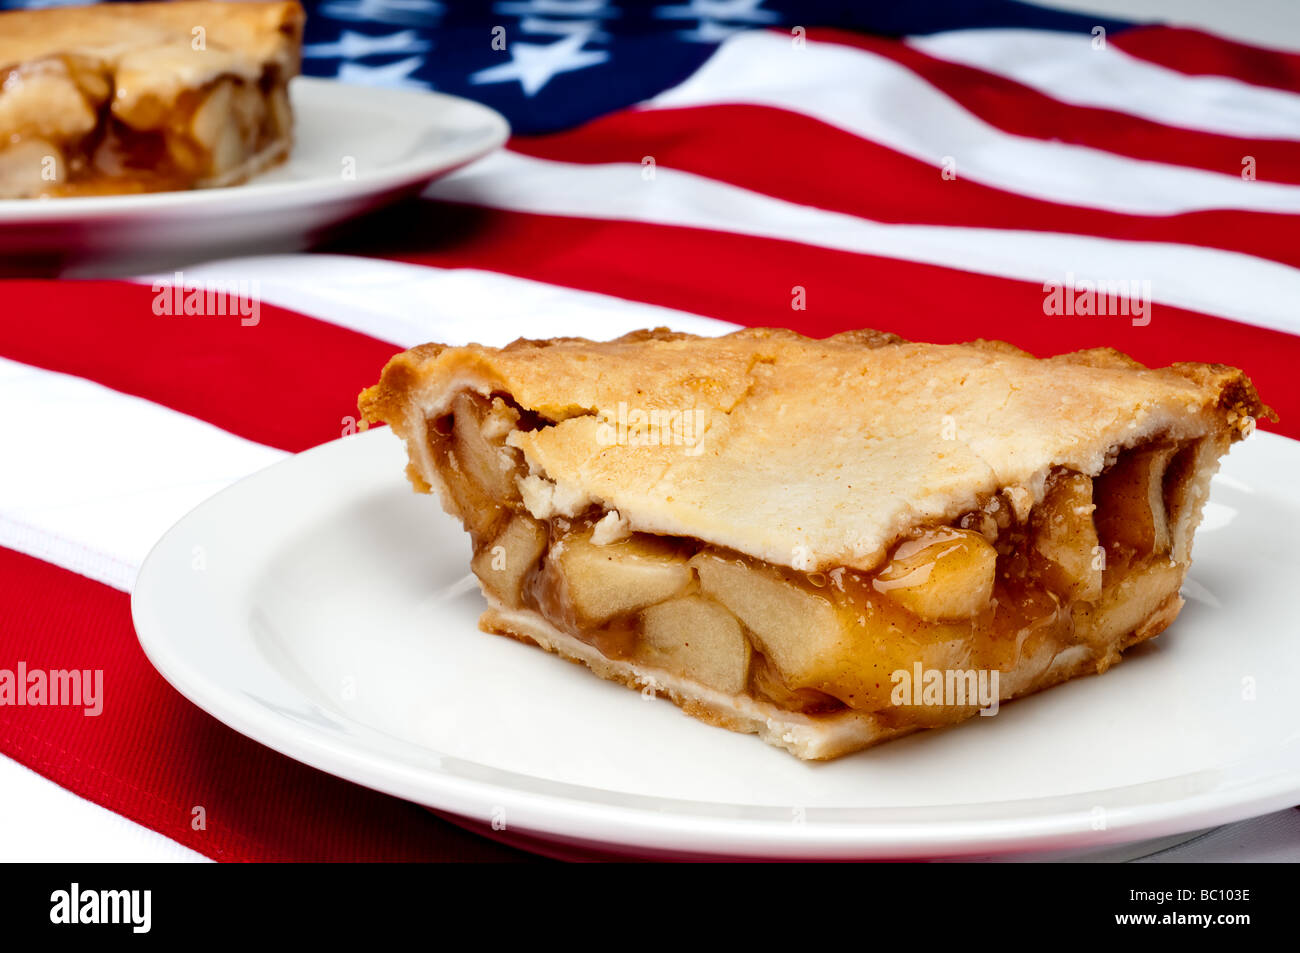 Messa a fuoco poco profonda l'immagine orizzontale di 2 pezzi di torta di mele sulla bandiera americana Foto Stock